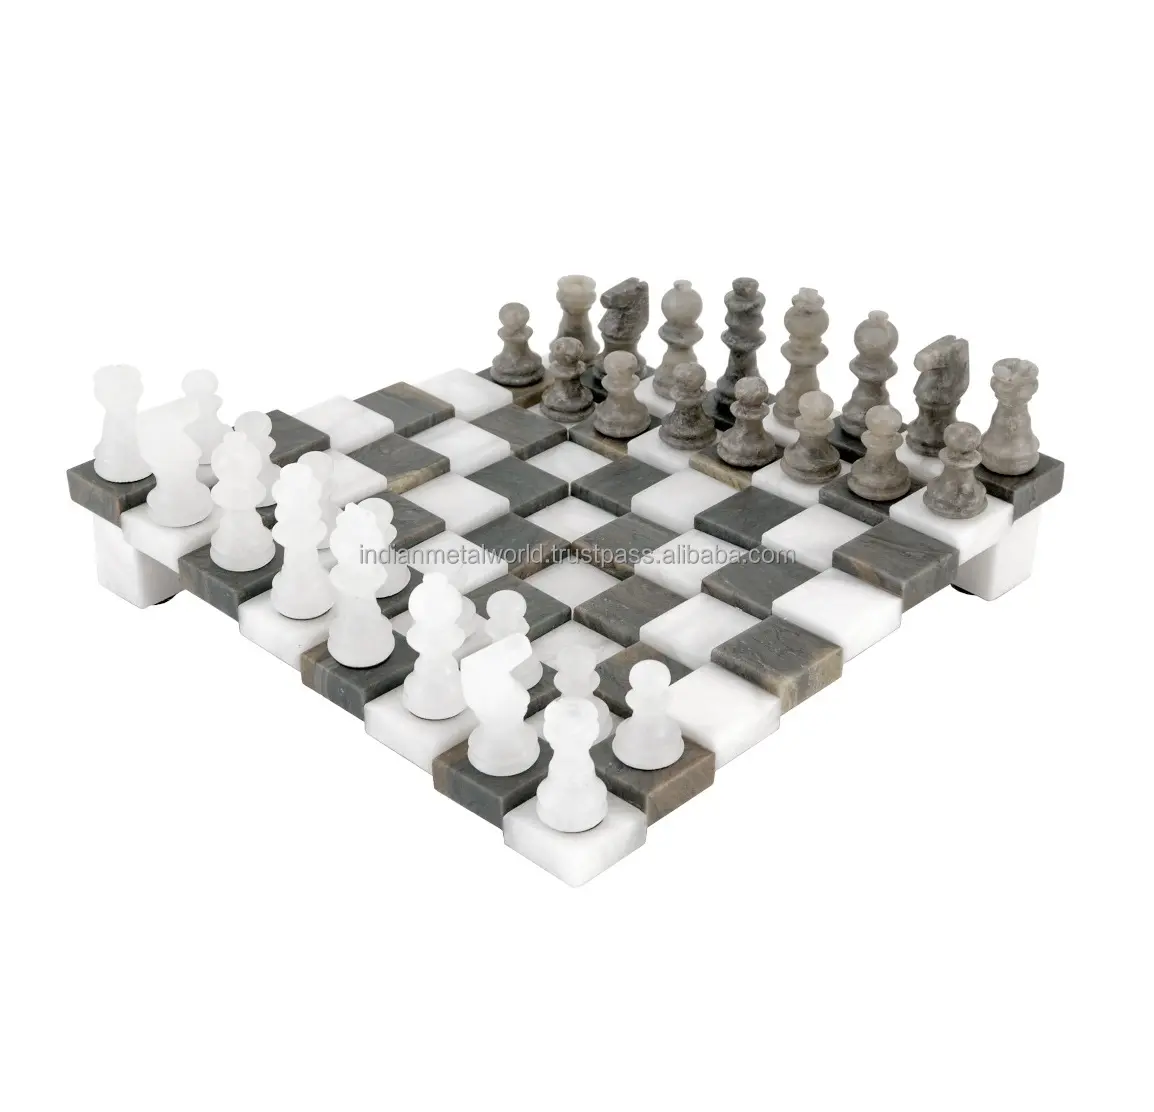 Siyah mermer satranç tahtası ile özel tasarım mermer oyuncular